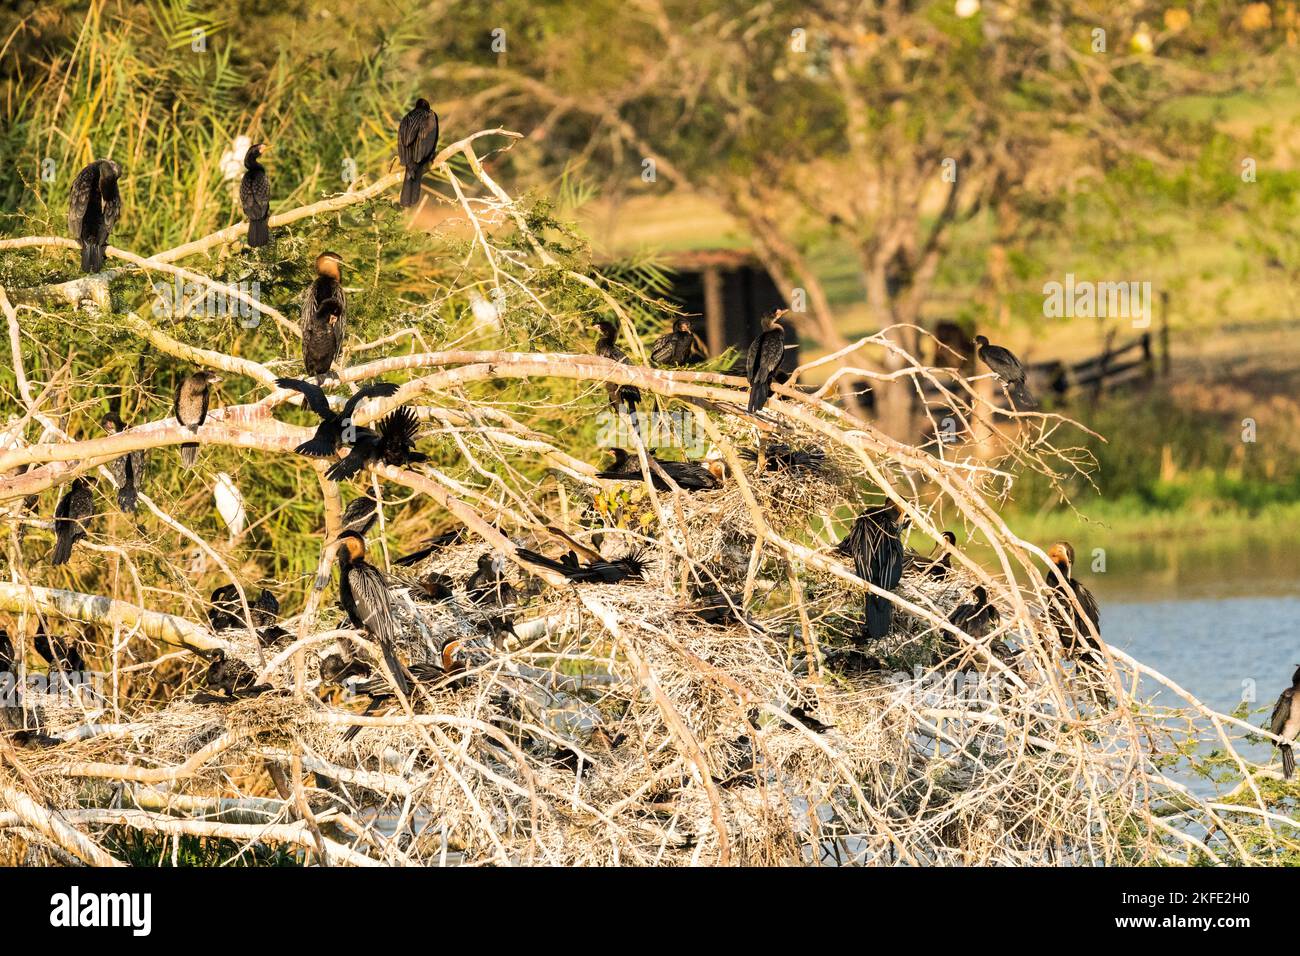 Baum mit Wasservögeln wie Kormoranen und Afrikanischen Darters, die in der Wildnis Südafrikas am frühen Morgen in sanftem Licht brüten und brüten Stockfoto